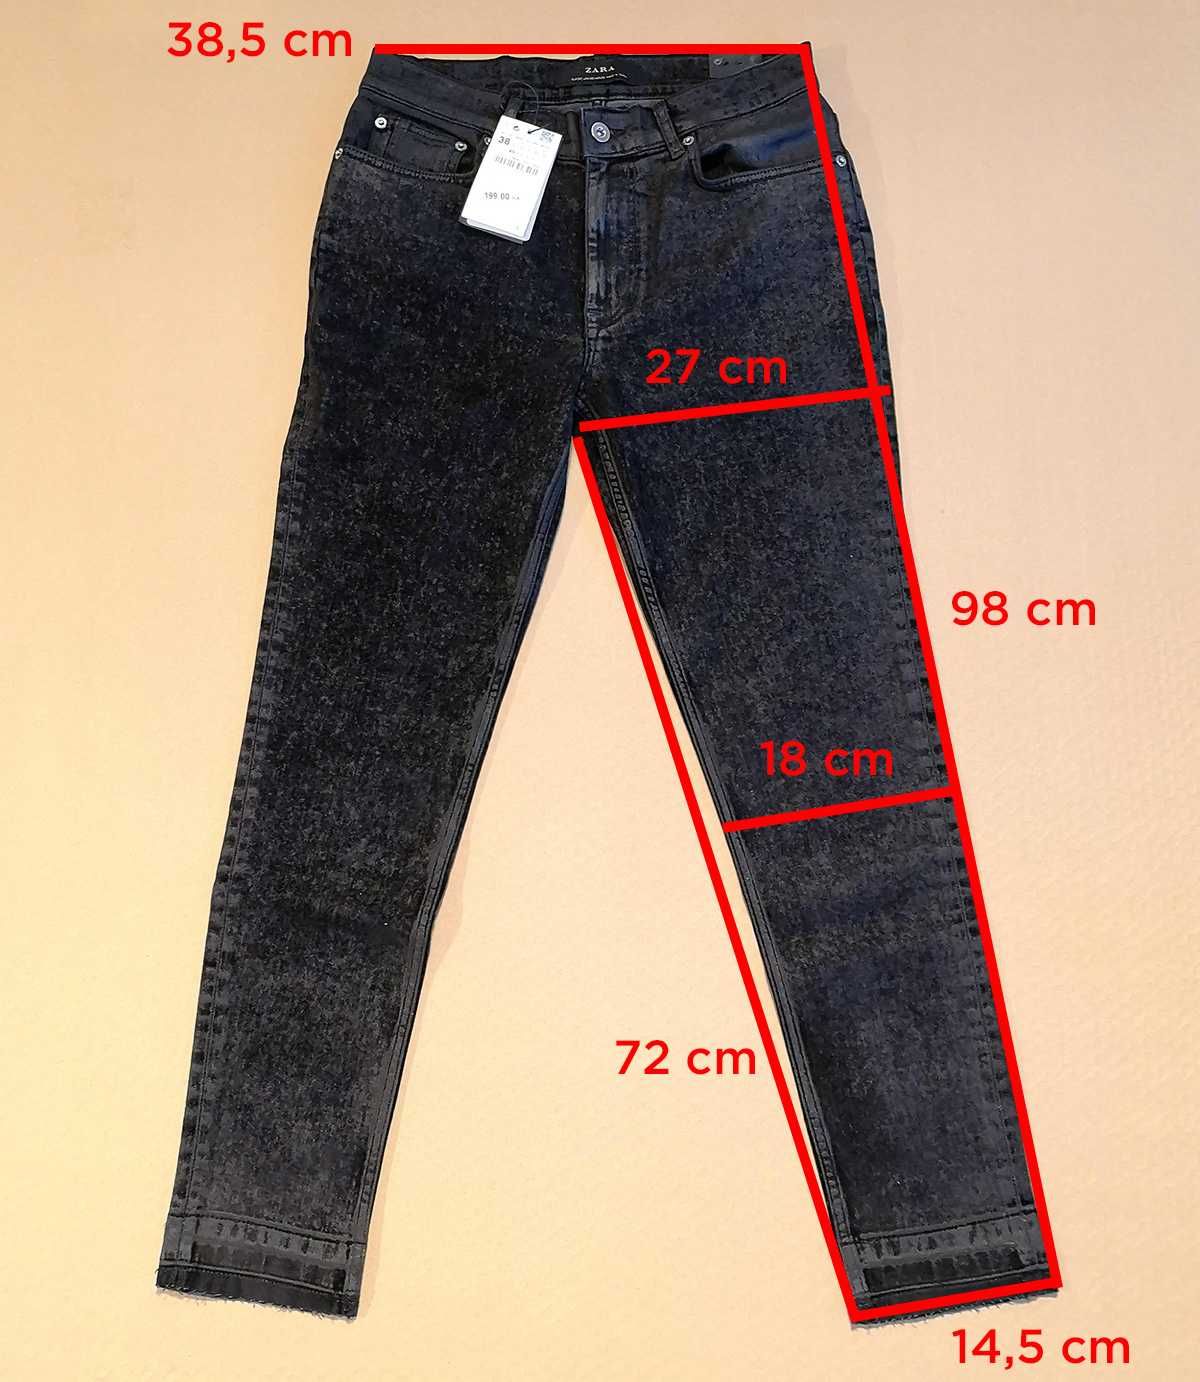 ZARA nowe spodnie jeansowe jeansy skinny fit 38/30